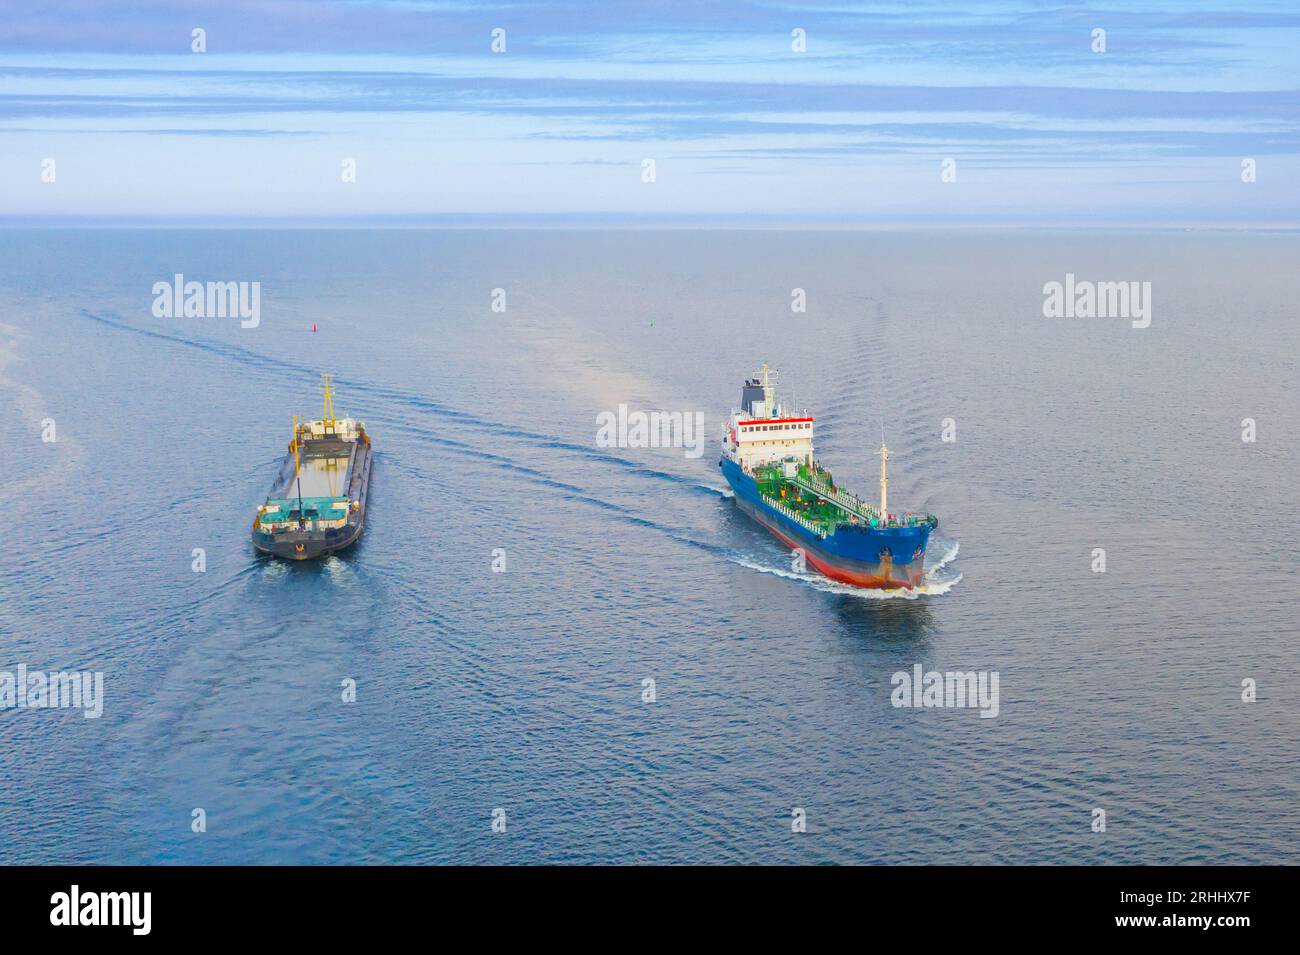 Le navi da carico divergono nella baia, navigano in direzioni diverse, vista aerea del movimento delle navi Foto Stock